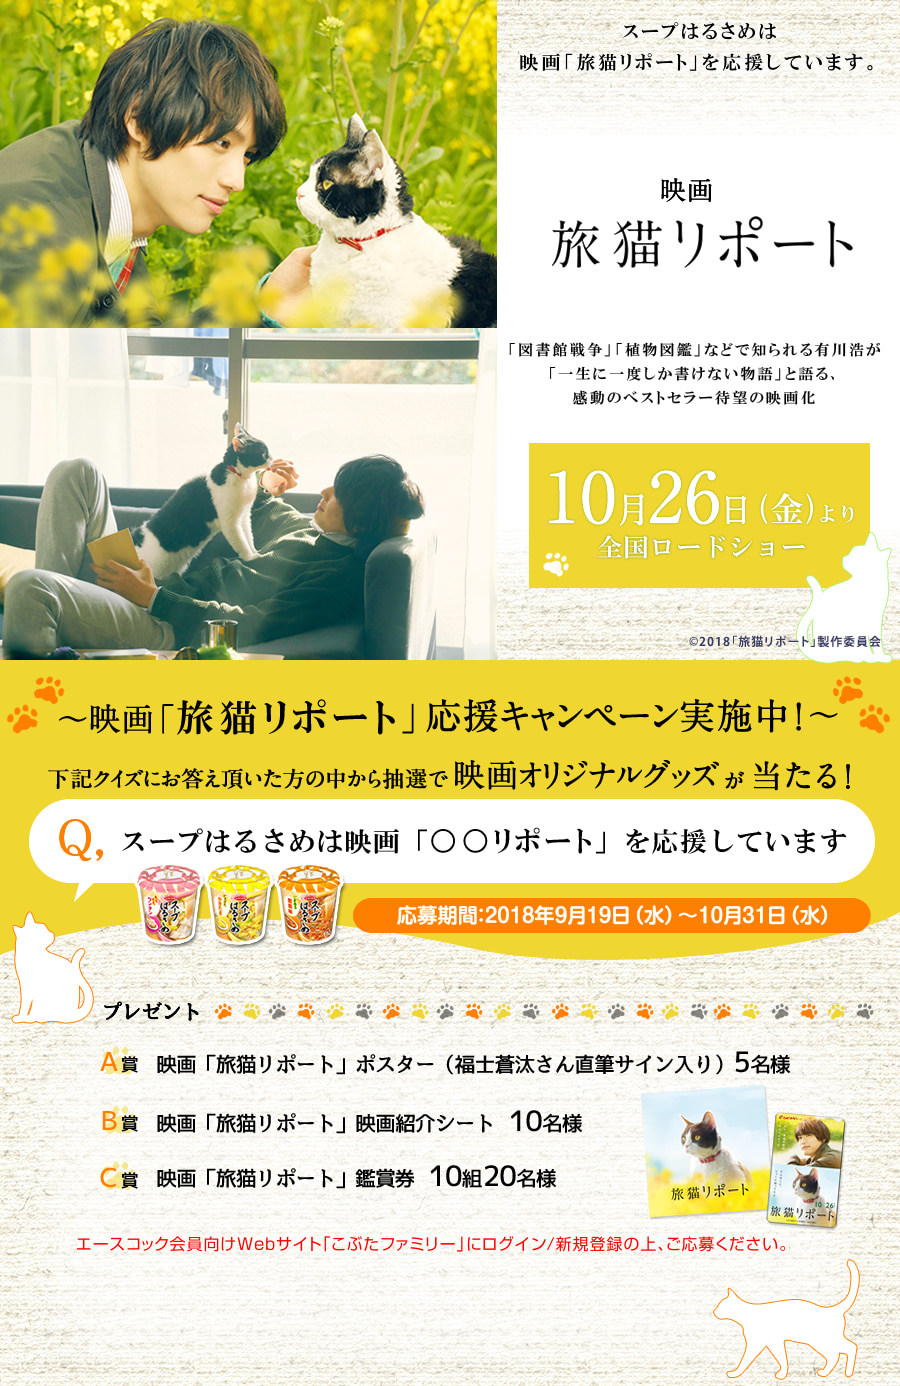 映画「旅猫リポート」× スープはるさめ 応援キャンペーン